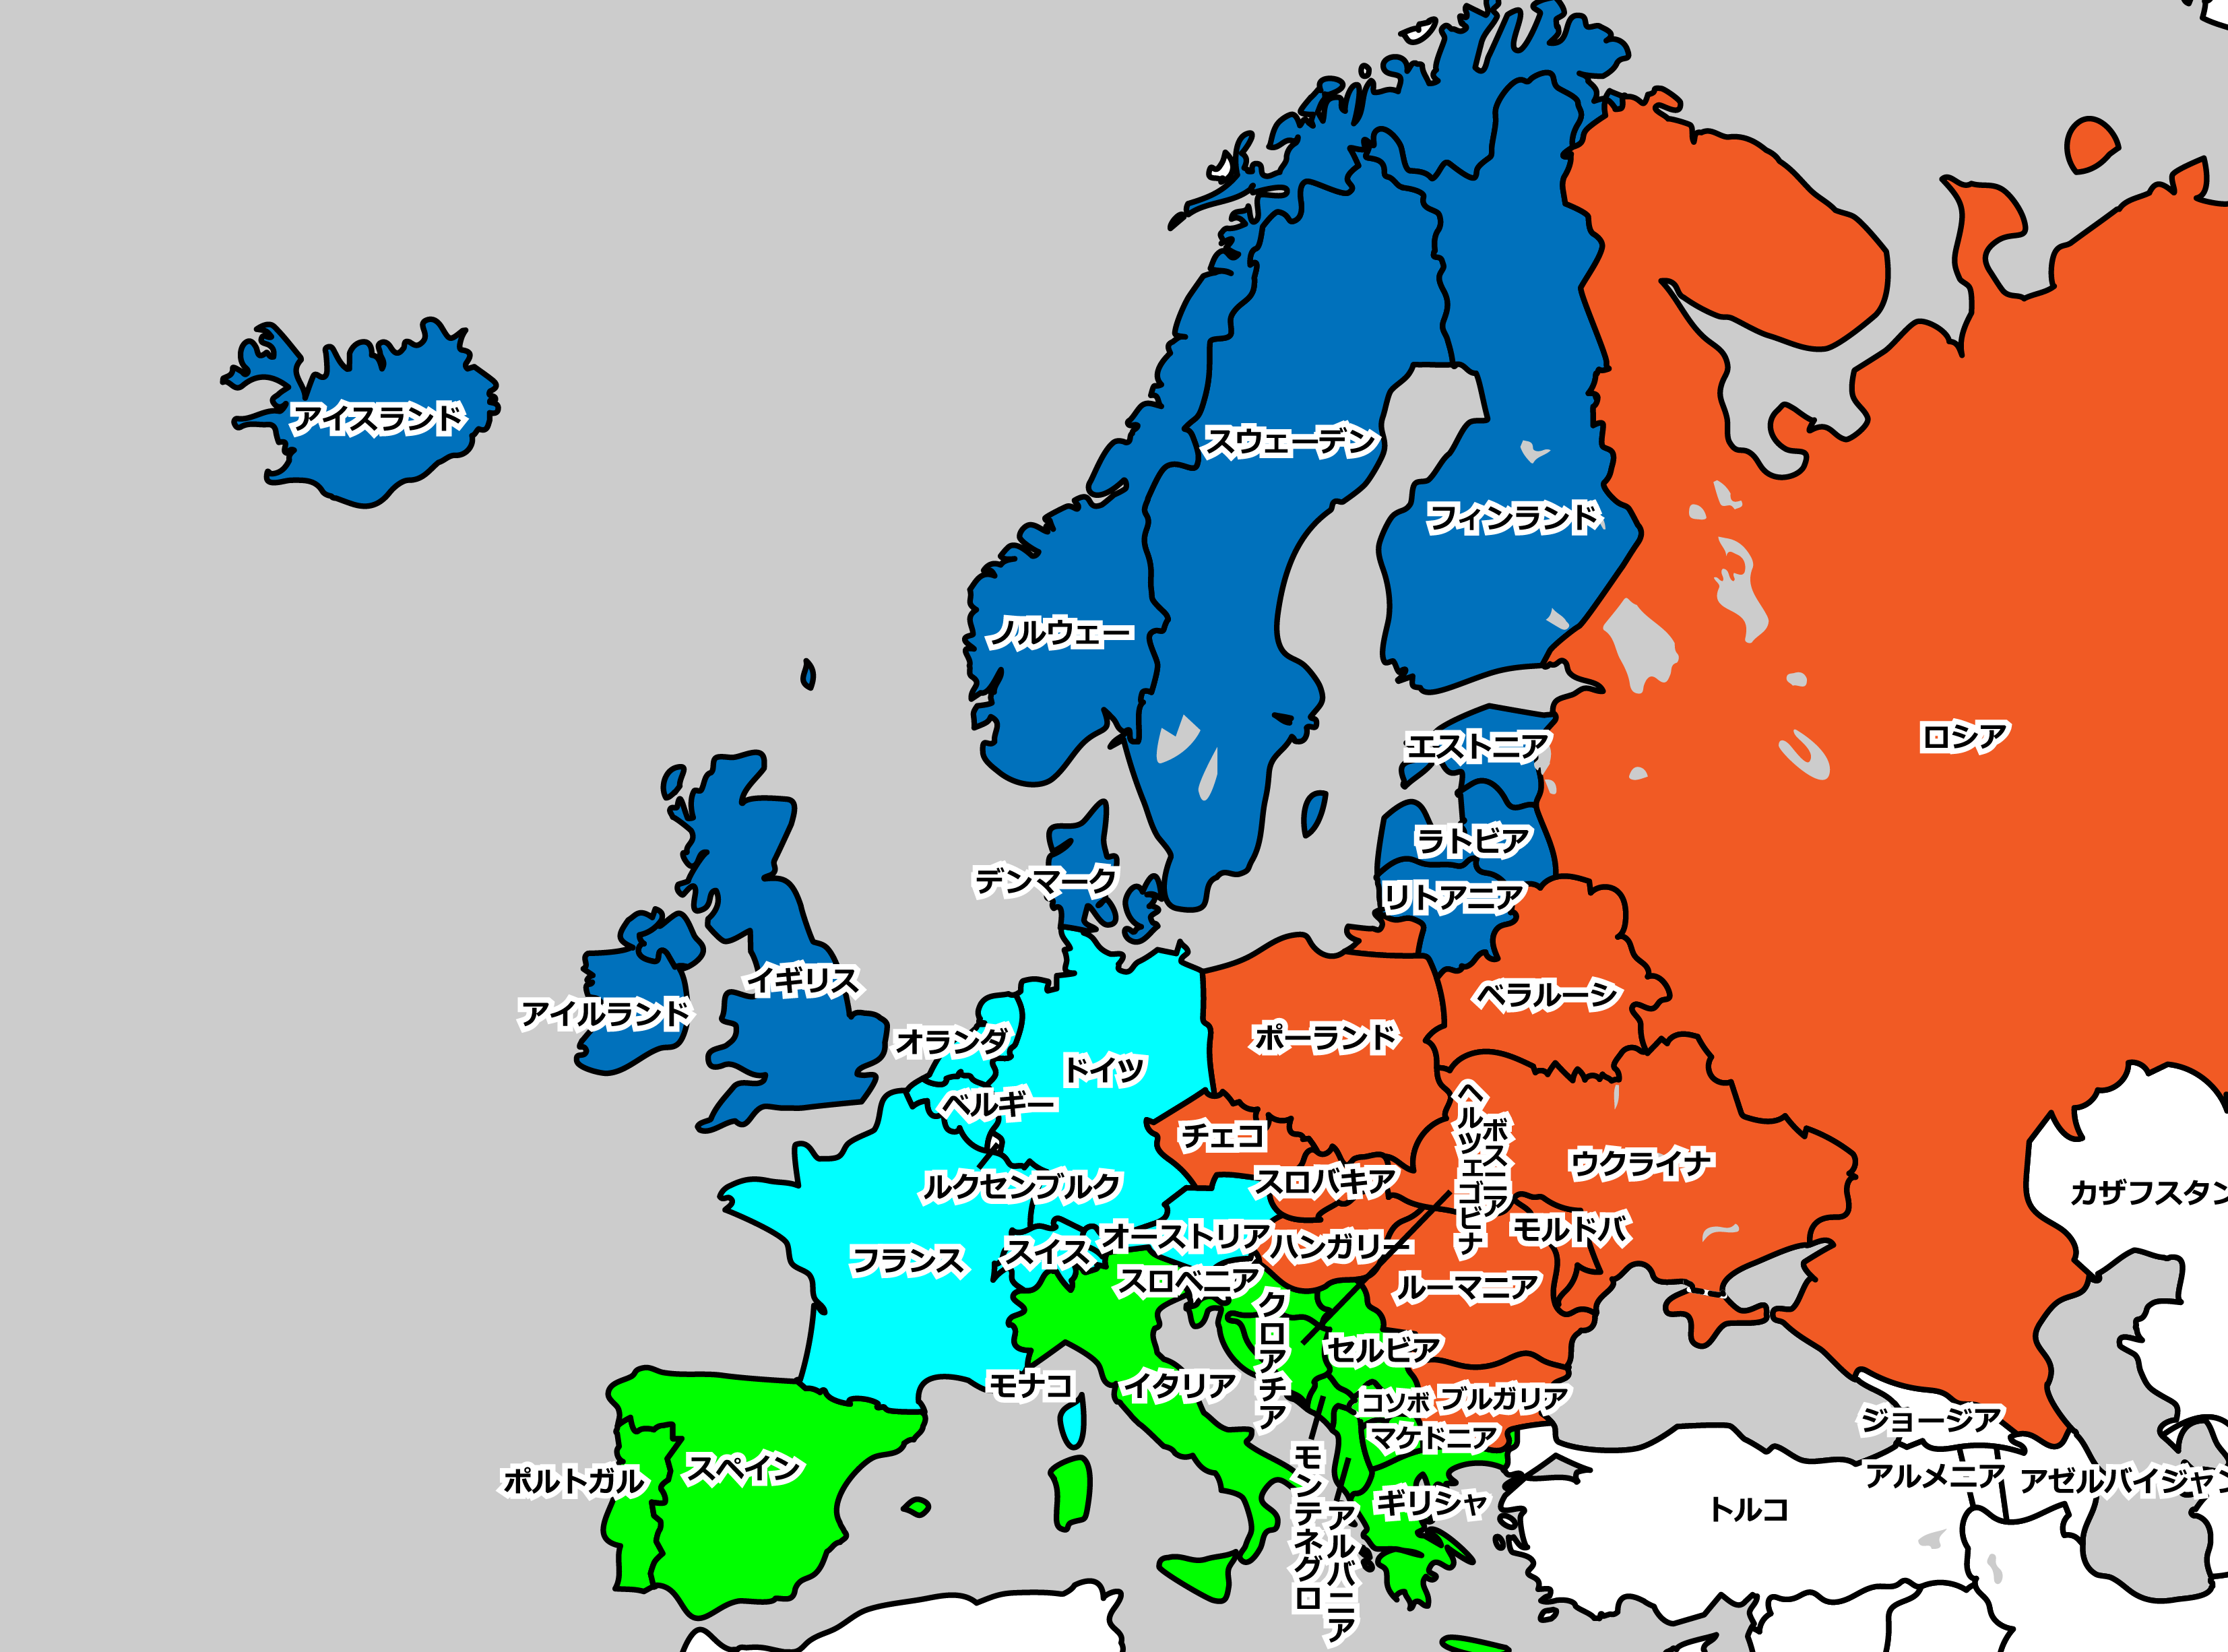 “東ヨーロッパ”はどこ？〜東欧諸国を地図で確認しよう〜